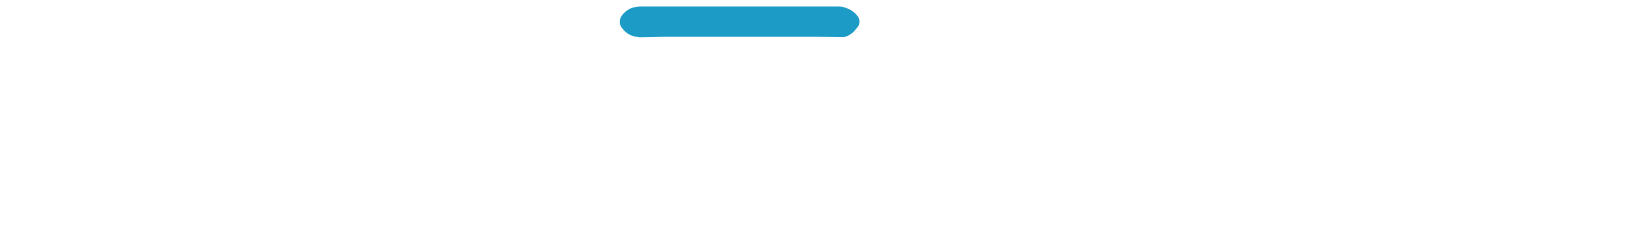 Hyzon Motors logo grand pour les fonds sombres (PNG transparent)